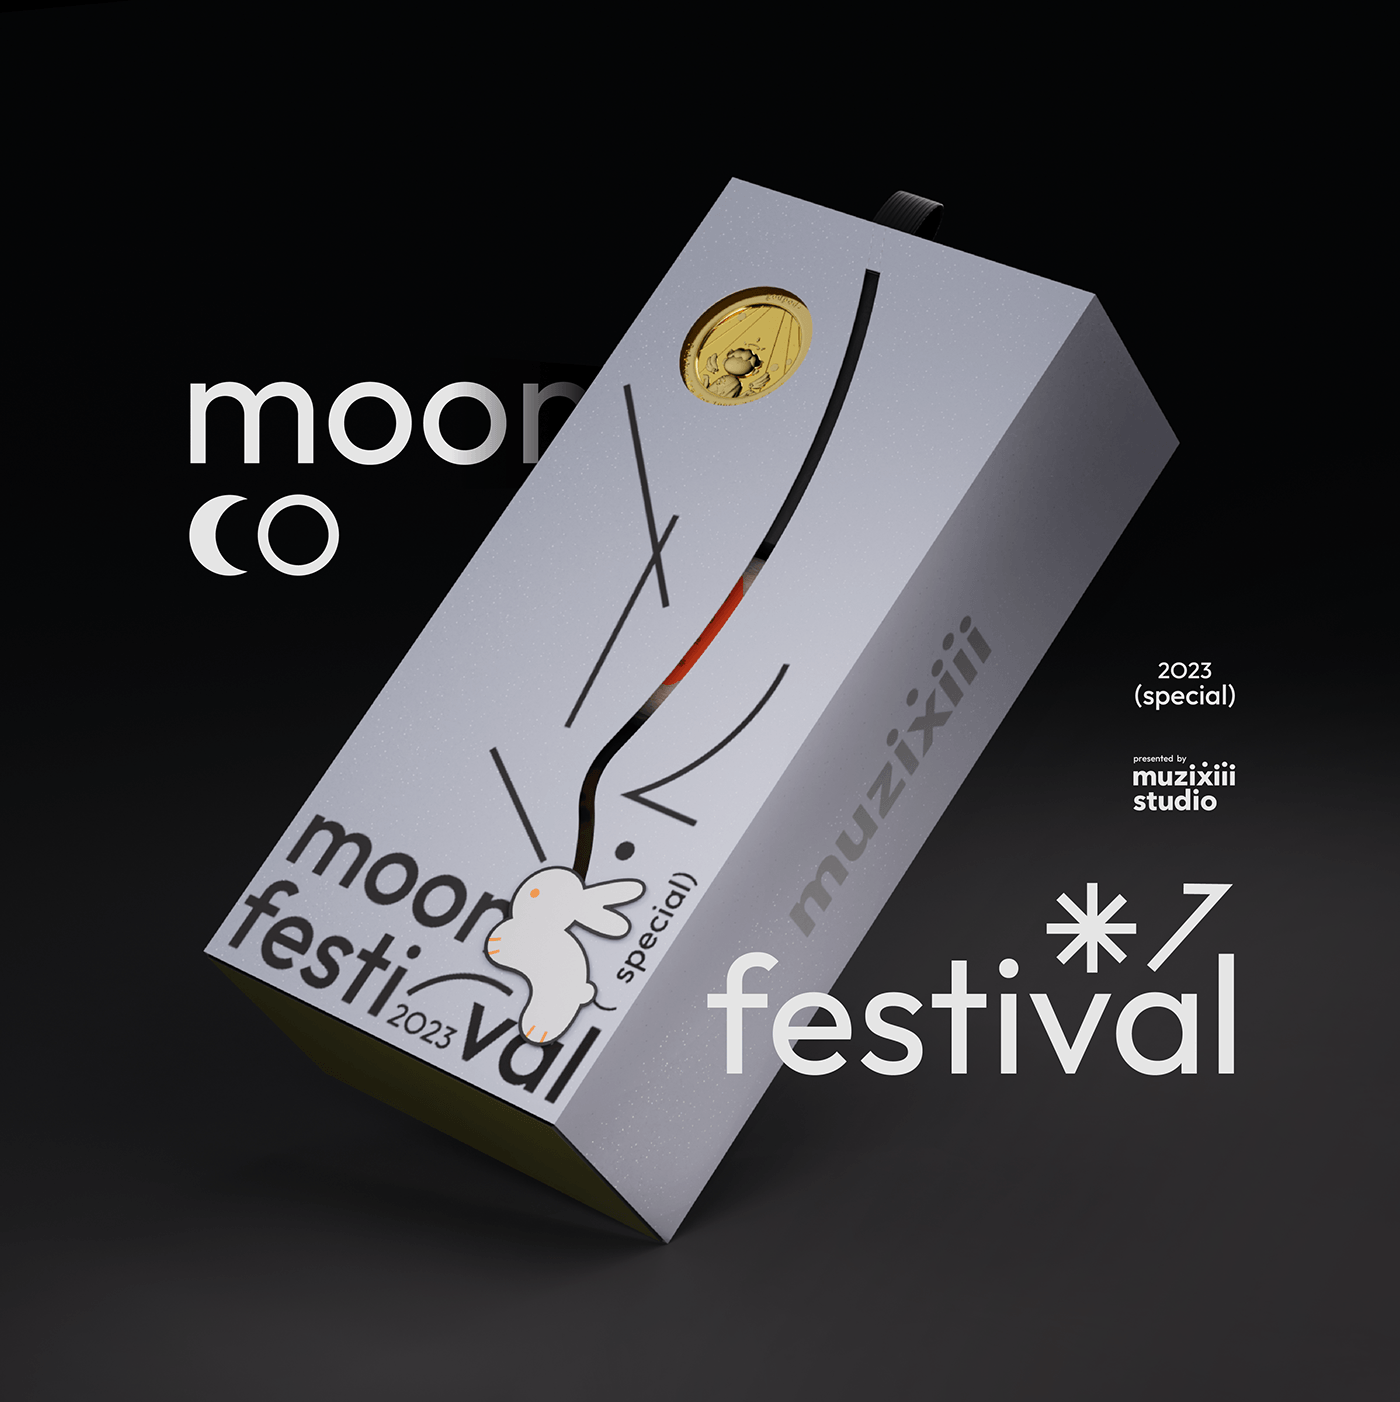 Packaging packaging design moon moonfestival adobe illustrator after effects cinema 4d graphic design  ILLUSTRATION  2023design